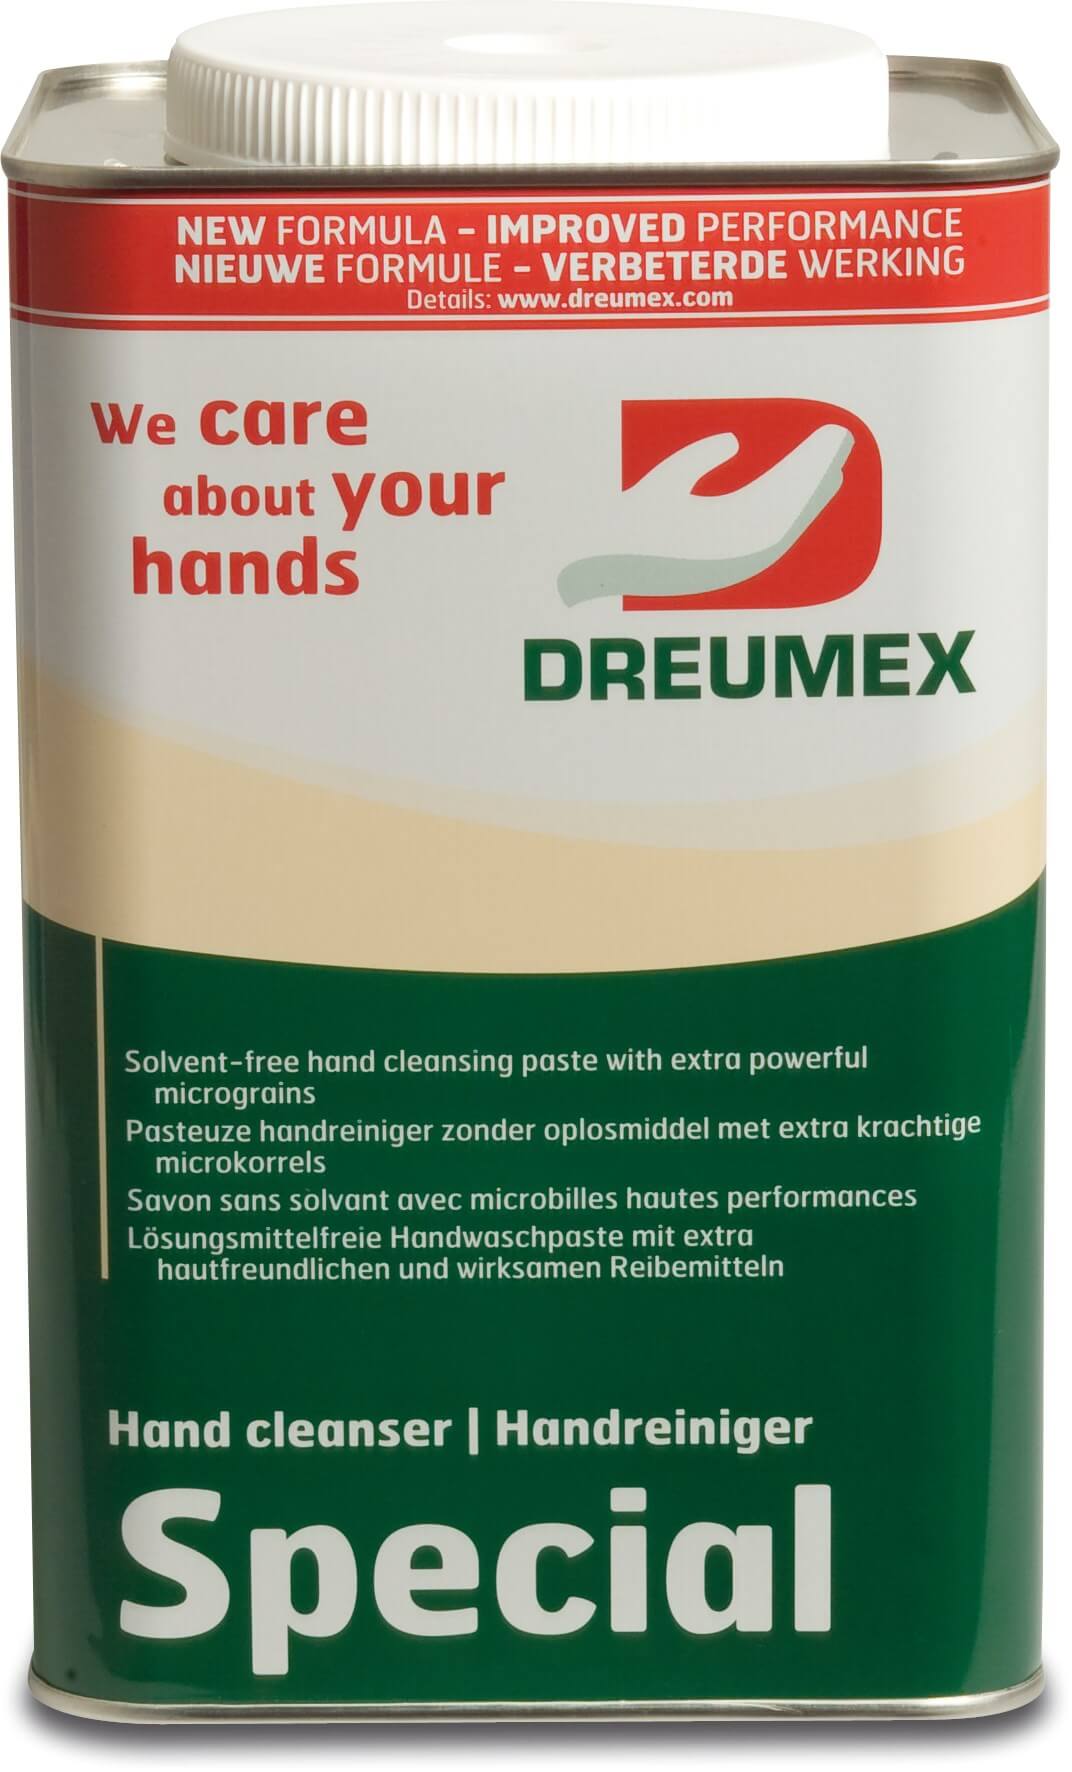 Dreumex Handtvätt kräm type Special 4.2 kg